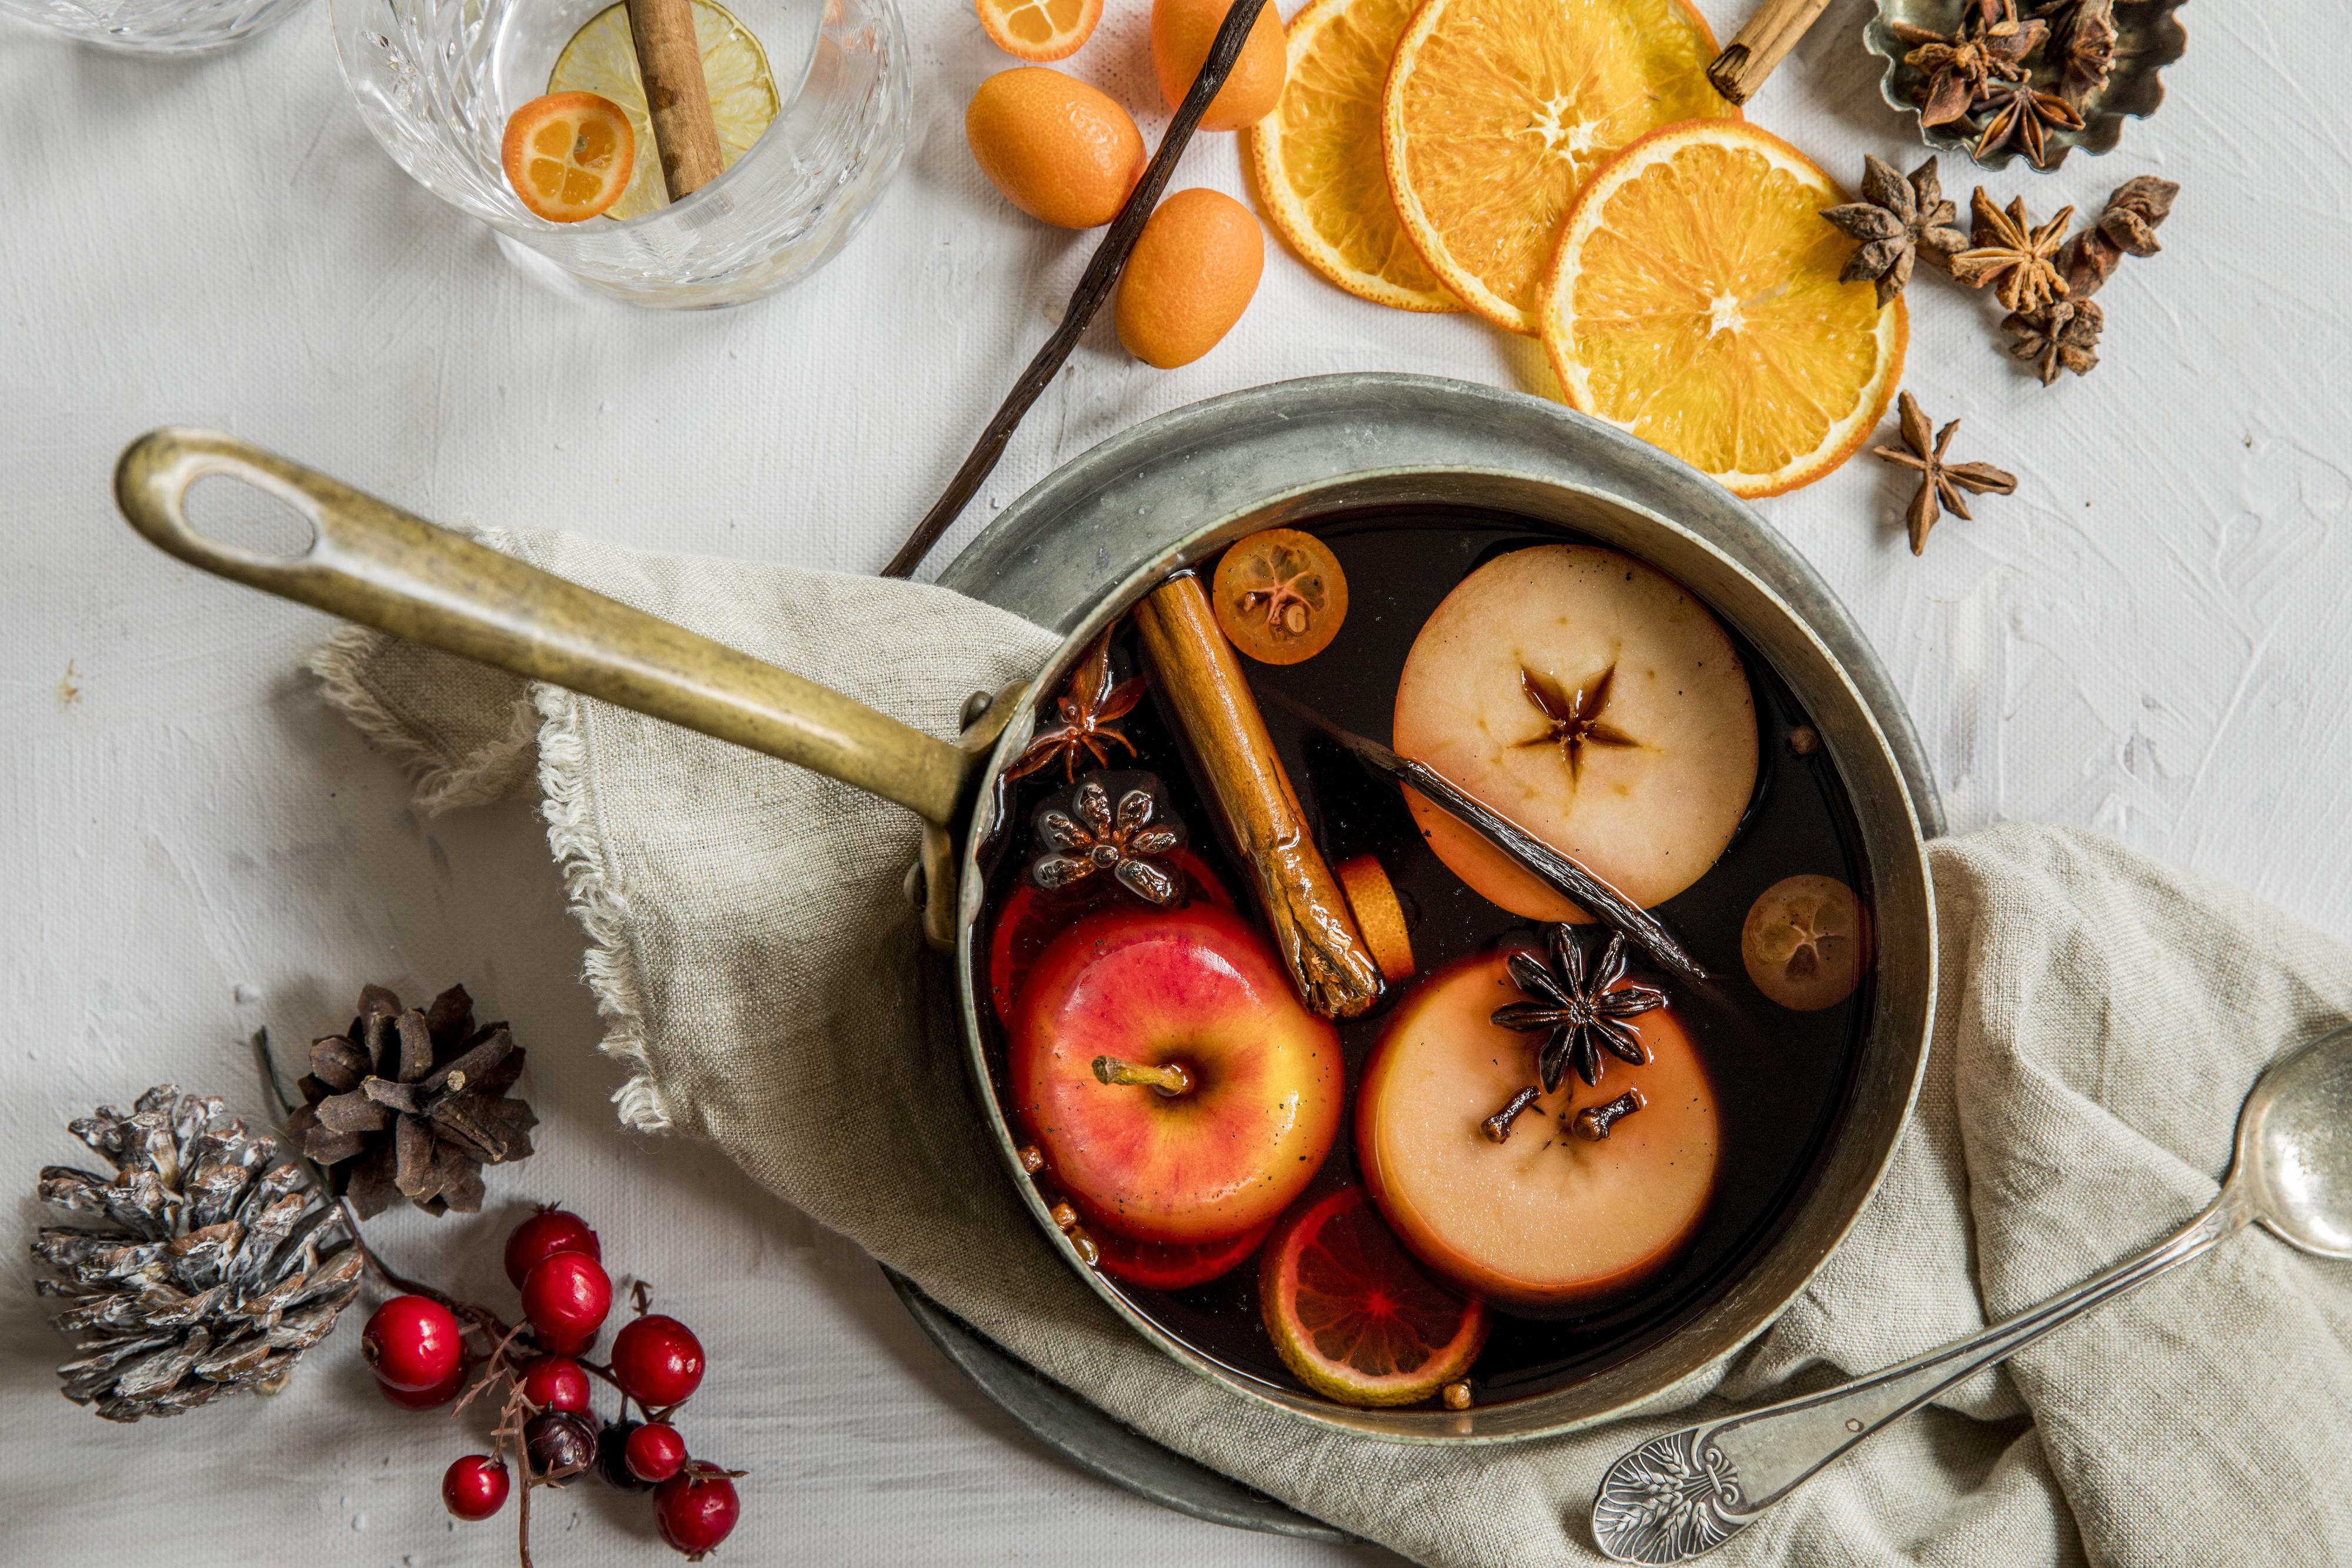 DEILIGE SMAKER: Hjemmelaget gløgg fylt med krydder og frukt gir julestemning. 